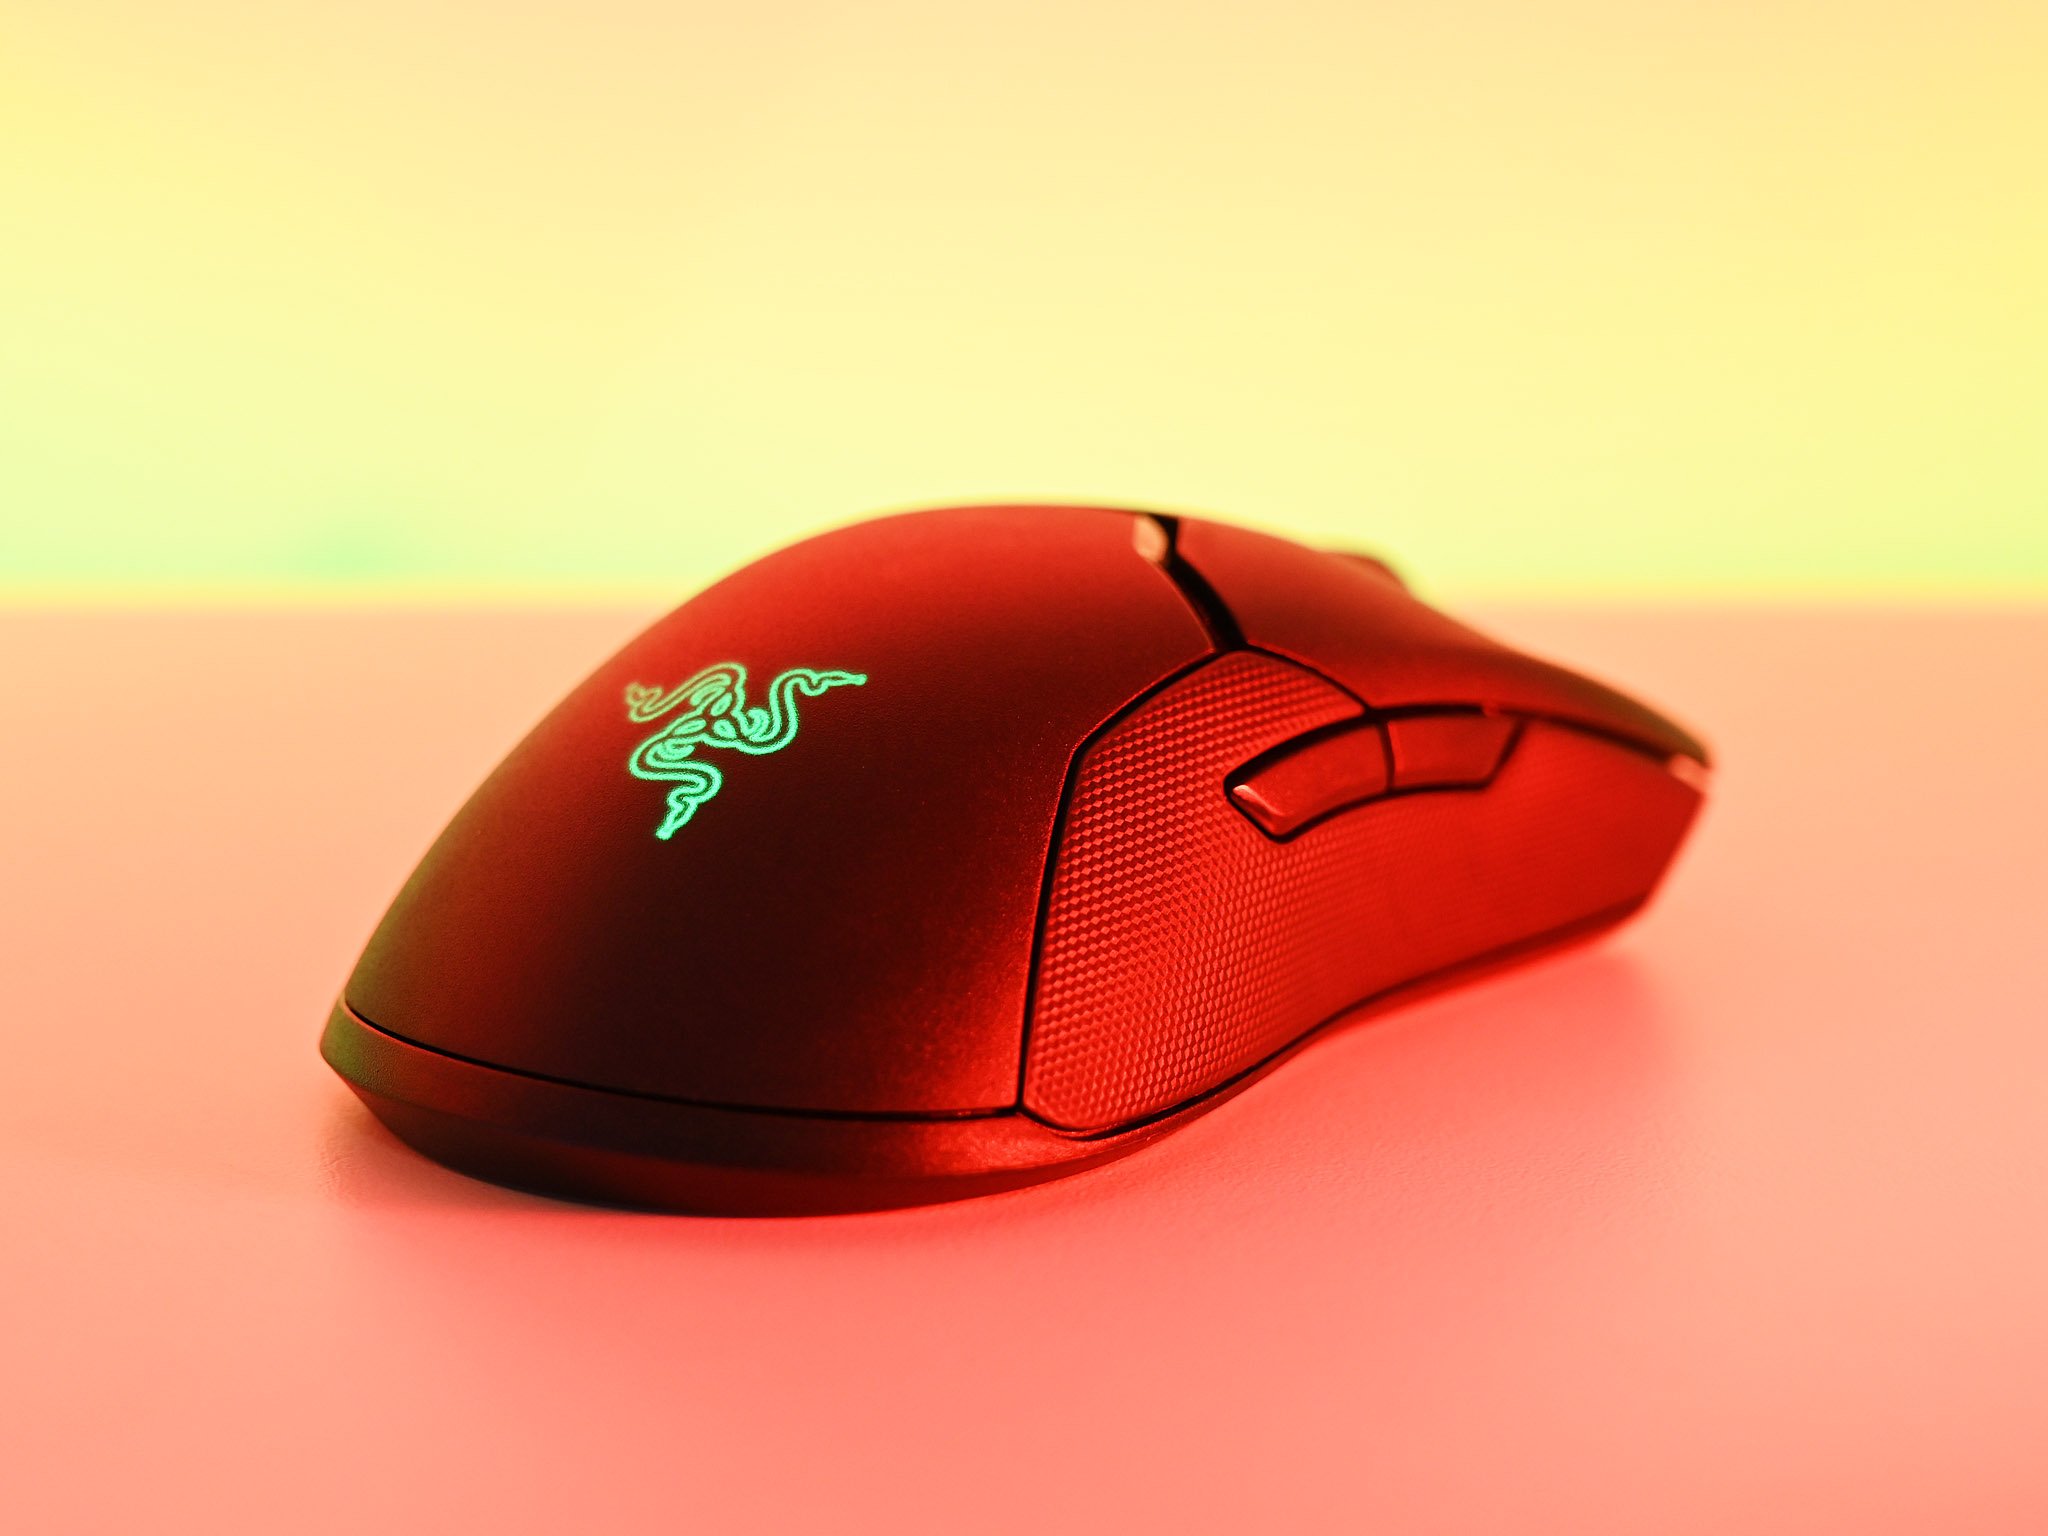 på vegne af heltinde Fisker The new Razer Viper 8KHz gaming mouse has hit a low price of $60 today |  Windows Central